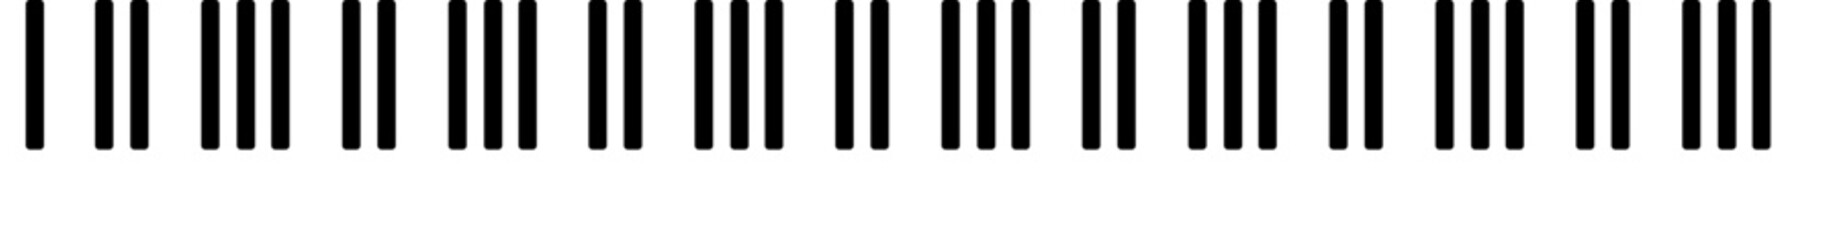 illustrazione vettoriale svg di tastiera di pianoforte estensione sette ottave su sfondo trasparente